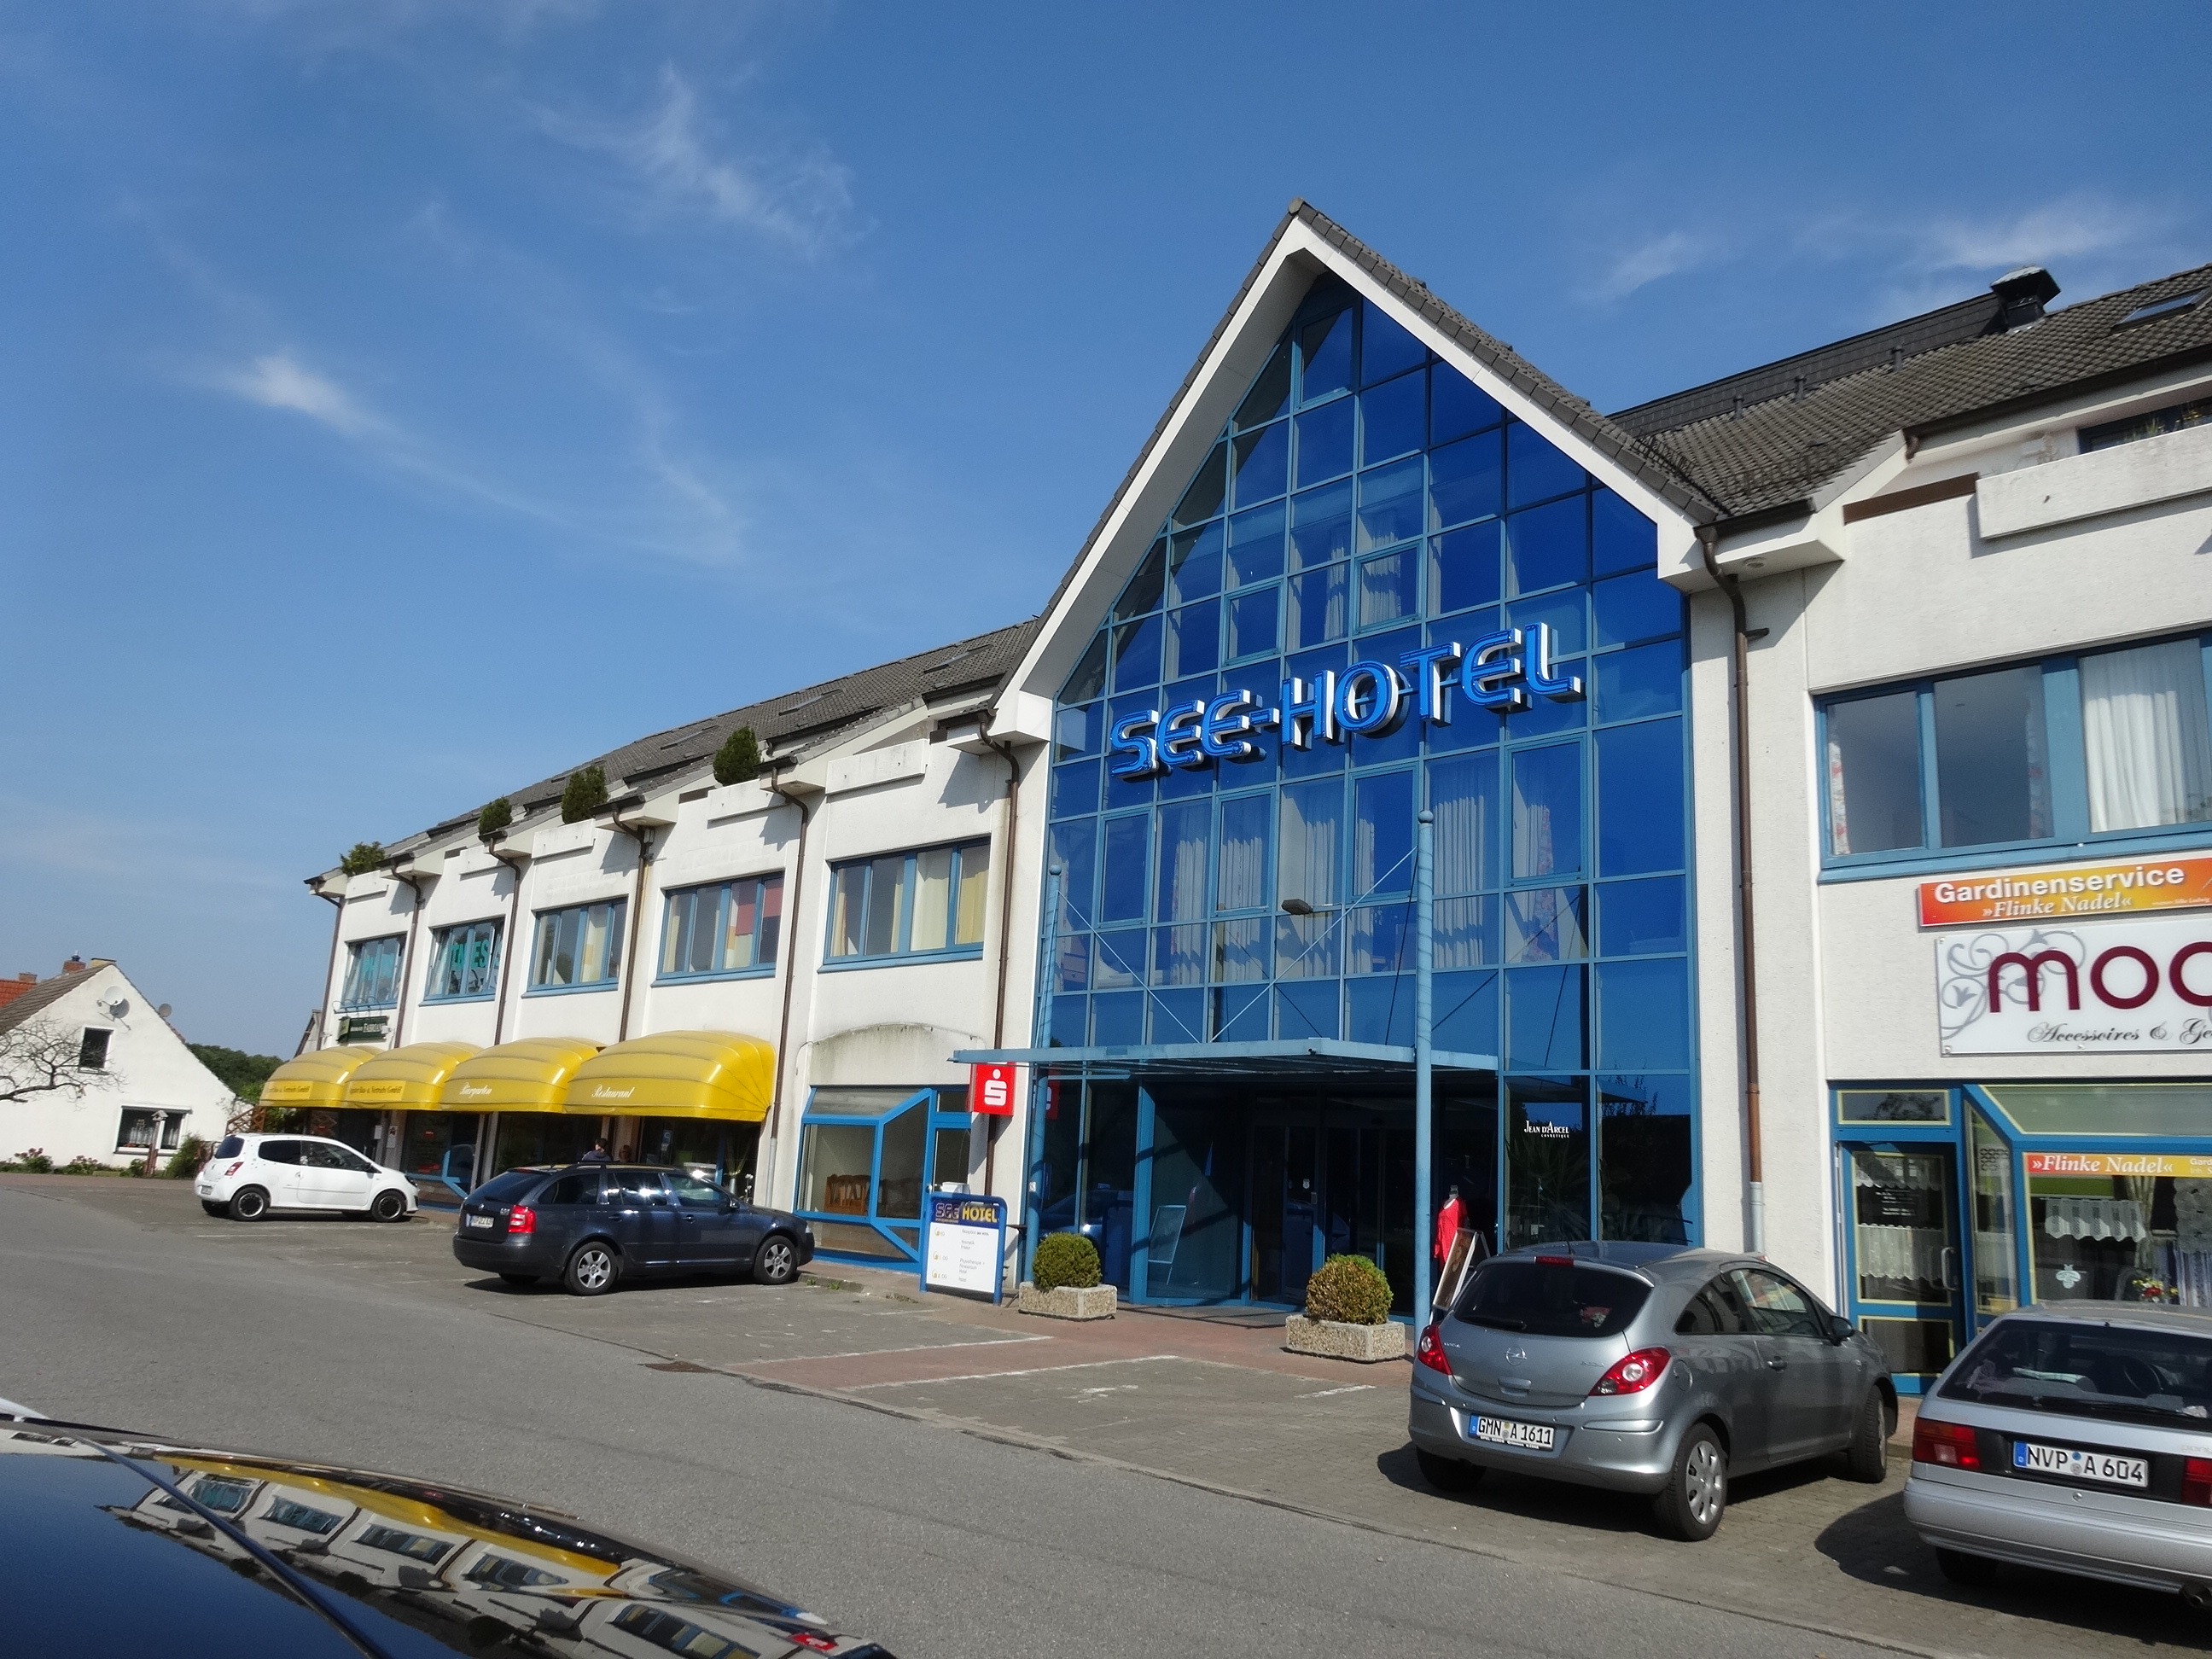 Hotelumbau zu 40 Mietwohnungen Nähe Stralsund